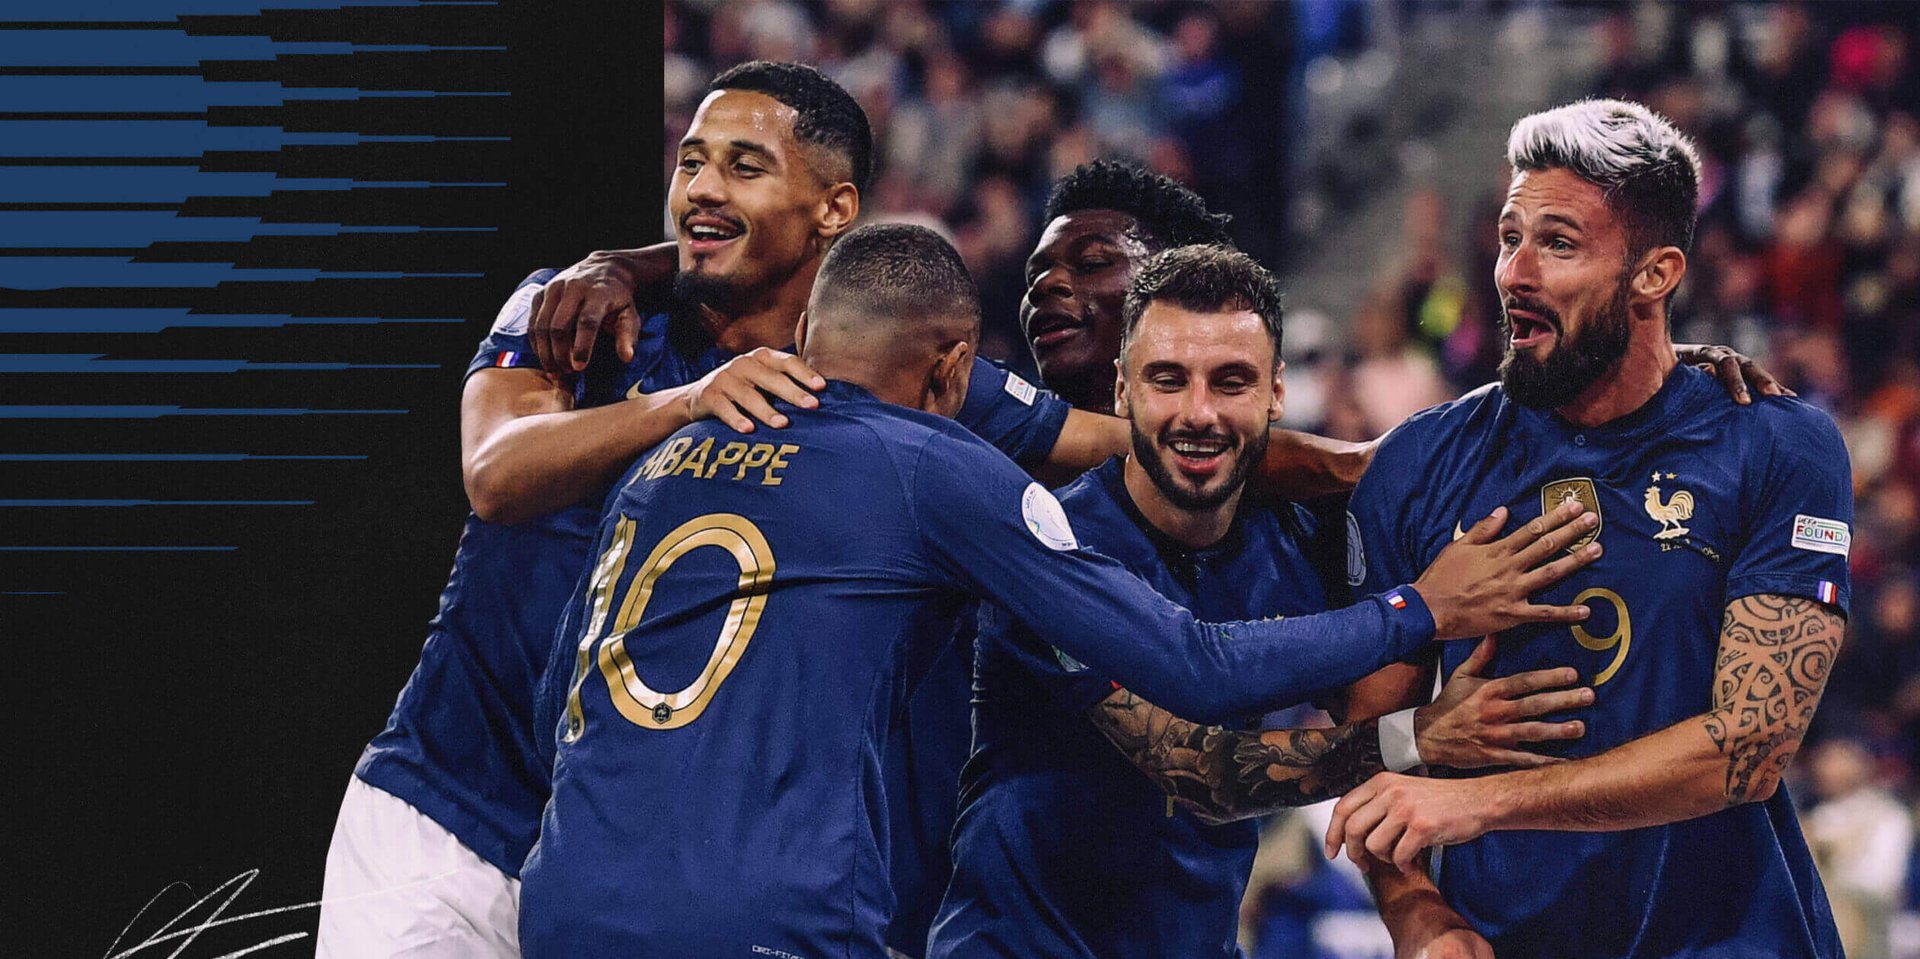 Guia da seleção da França 2022 na Copa do Mundo: A equipe laranja deveria avançar ou voltar para casa mais cedo